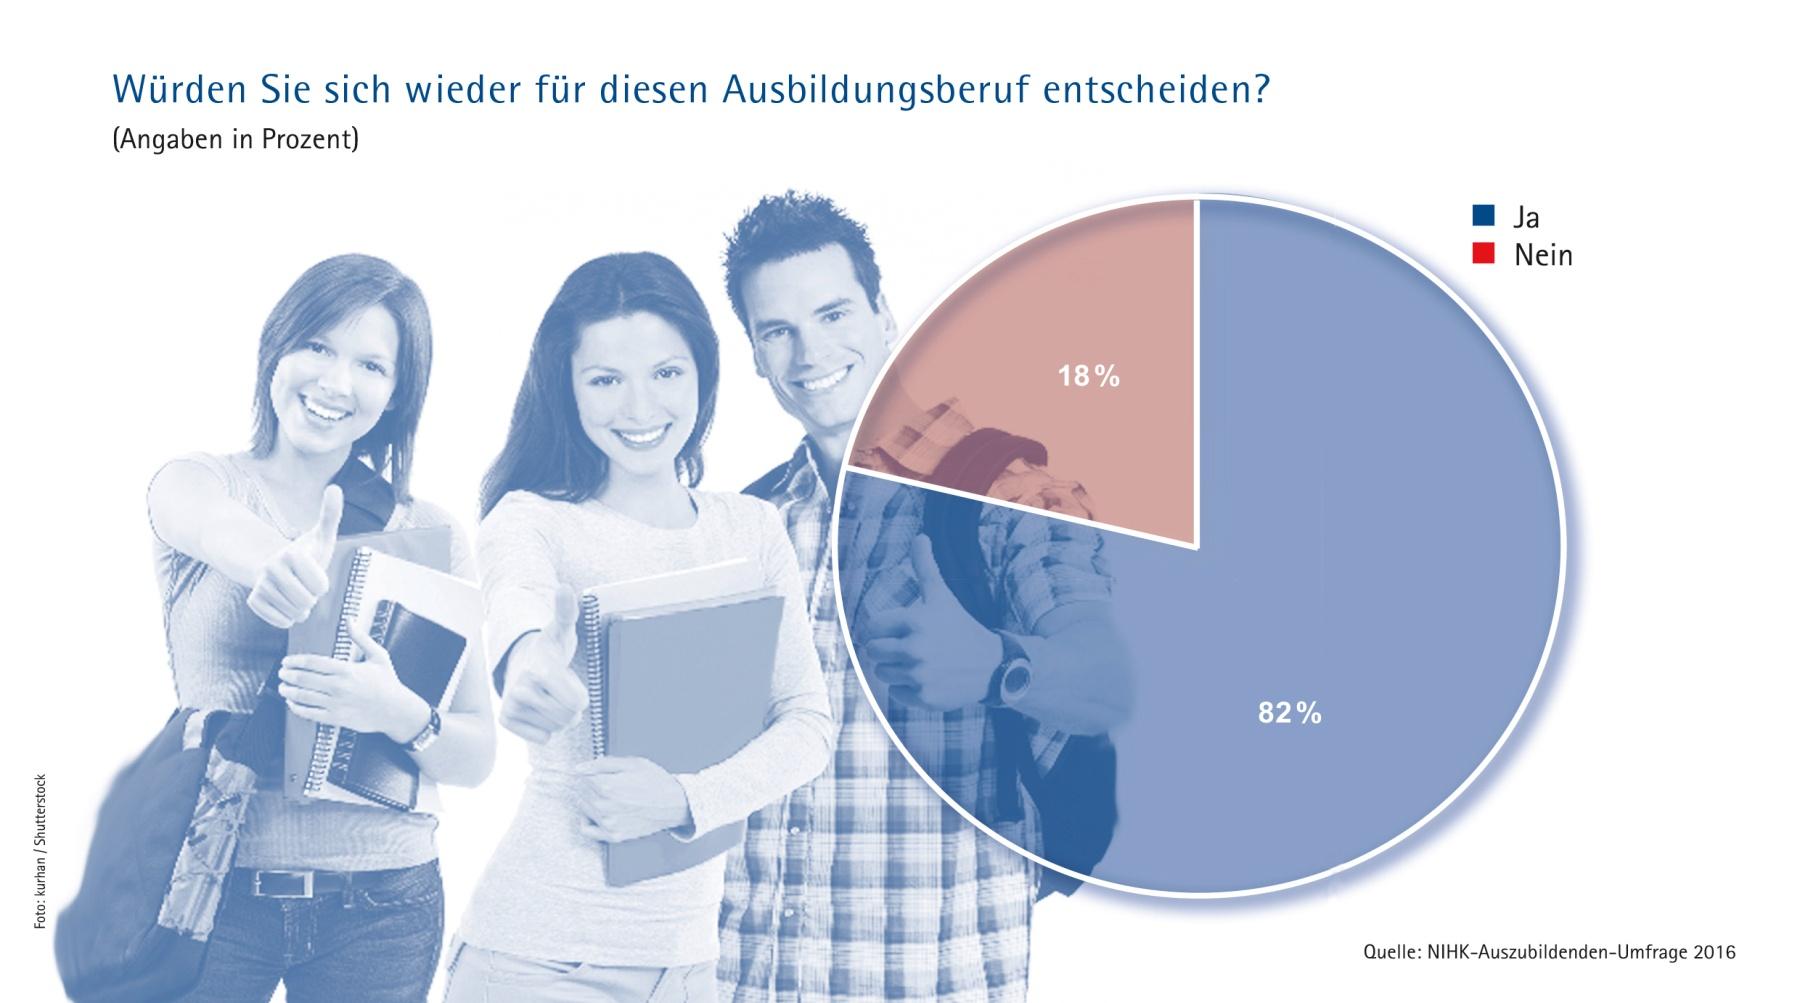 Die aktuelle NIHK-Umfrage zeigt: Diejenigen, die sich dafür entschieden haben, sind sehr zufrieden. Rund 82 Prozent der Auszubildenden in Niedersachsen würden ihren Ausbildungsberuf wieder wählen.